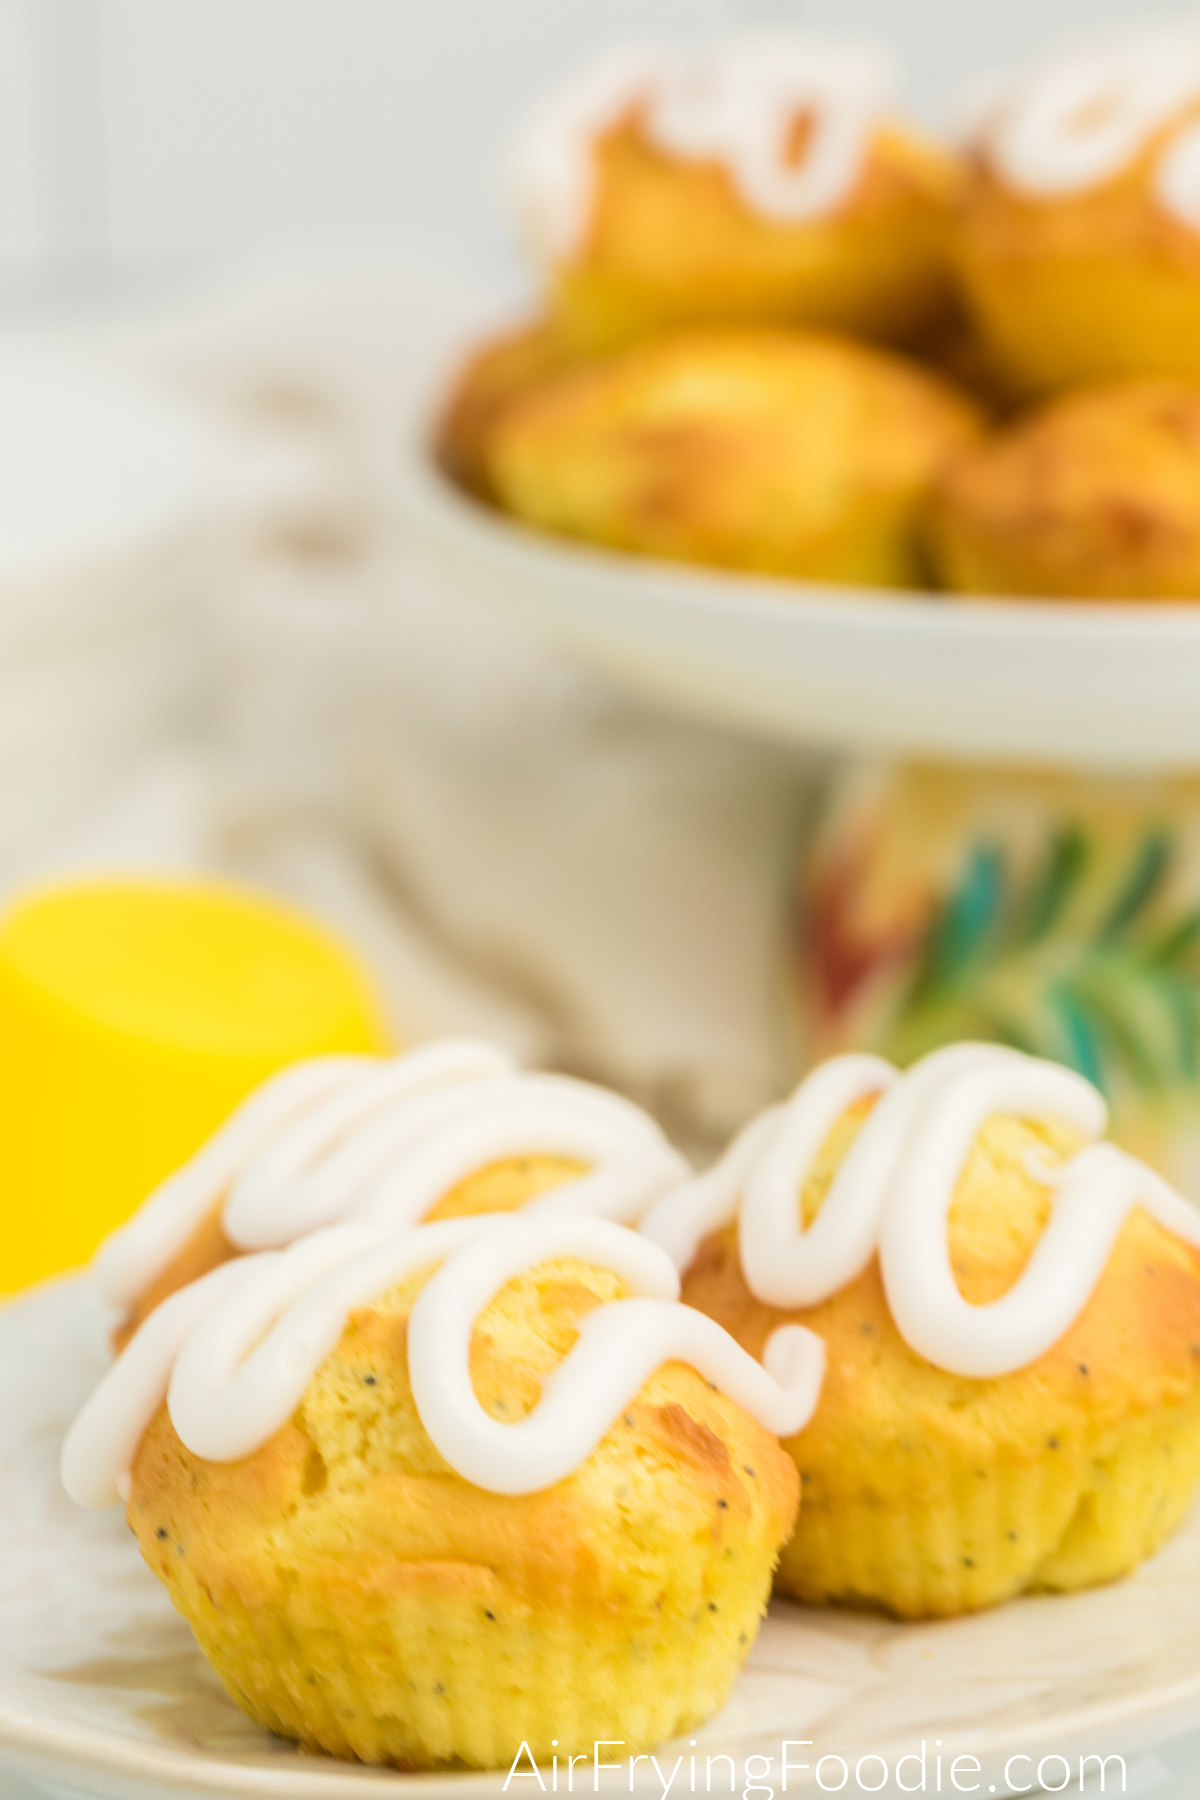 Lemon Poppy Seed Muffins with lemon glaze on a plate, ready to serve.